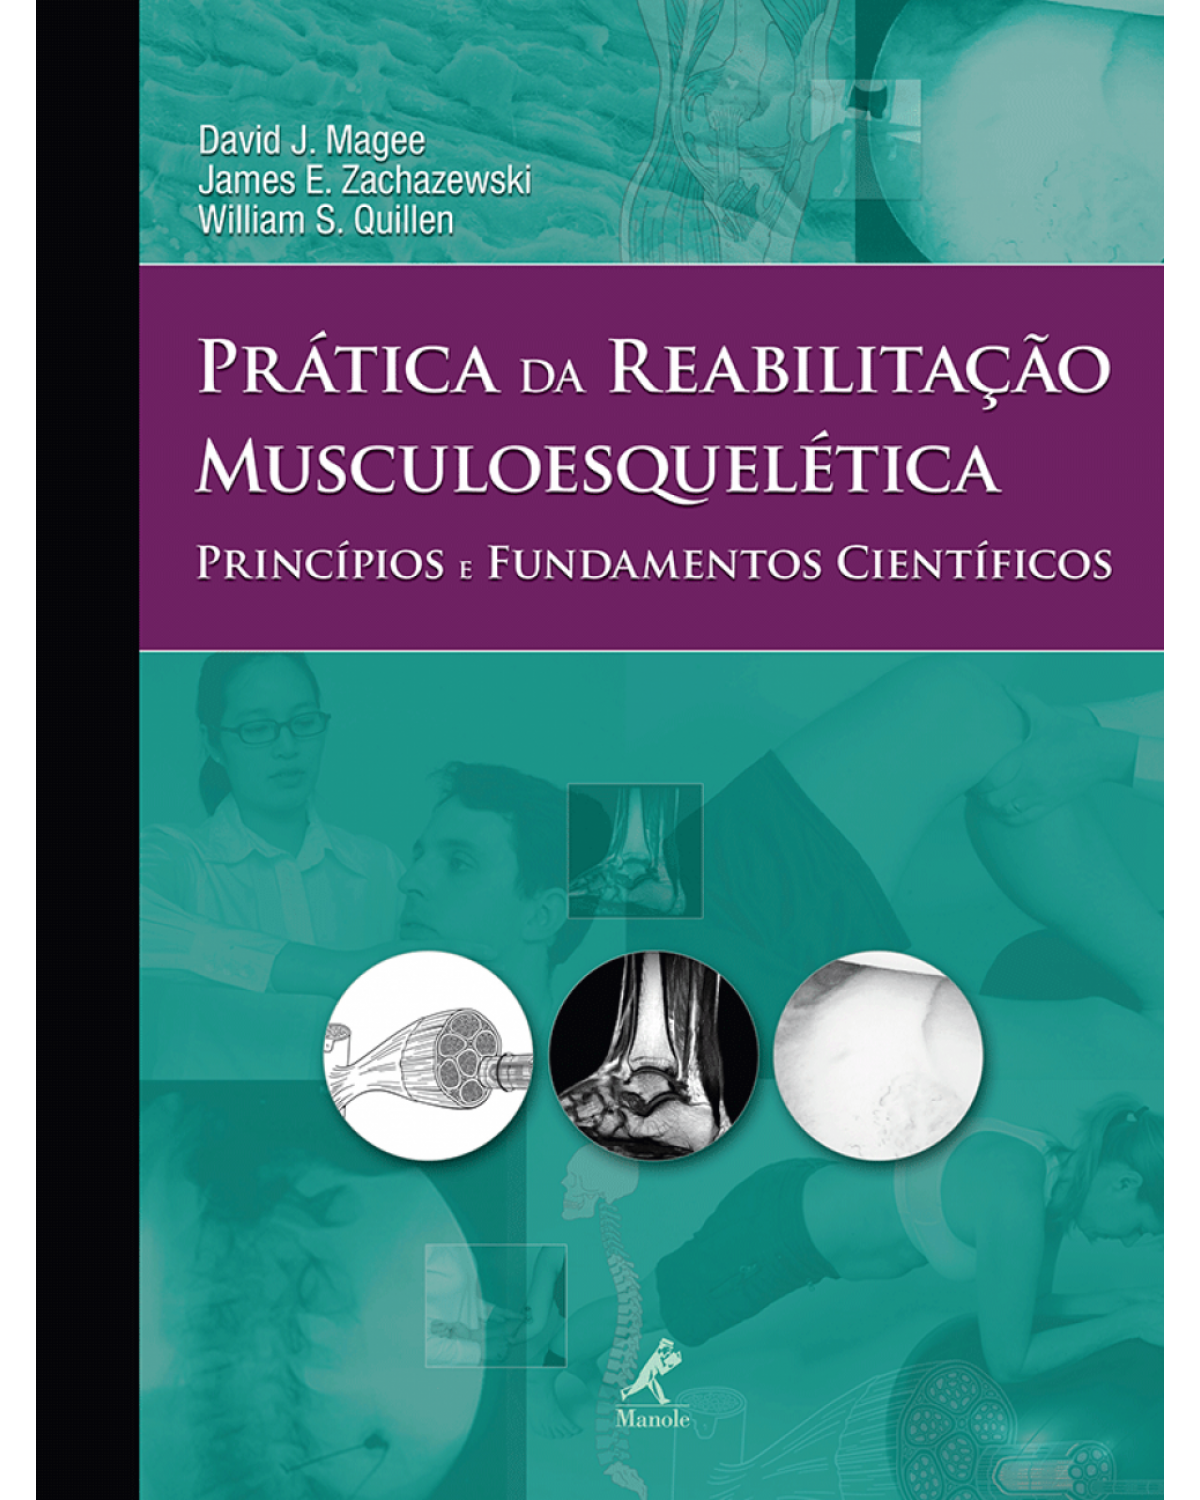 Prática da reabilitação musculoesquelética - Princípios e fundamentos científicos - 1ª Edição | 2013